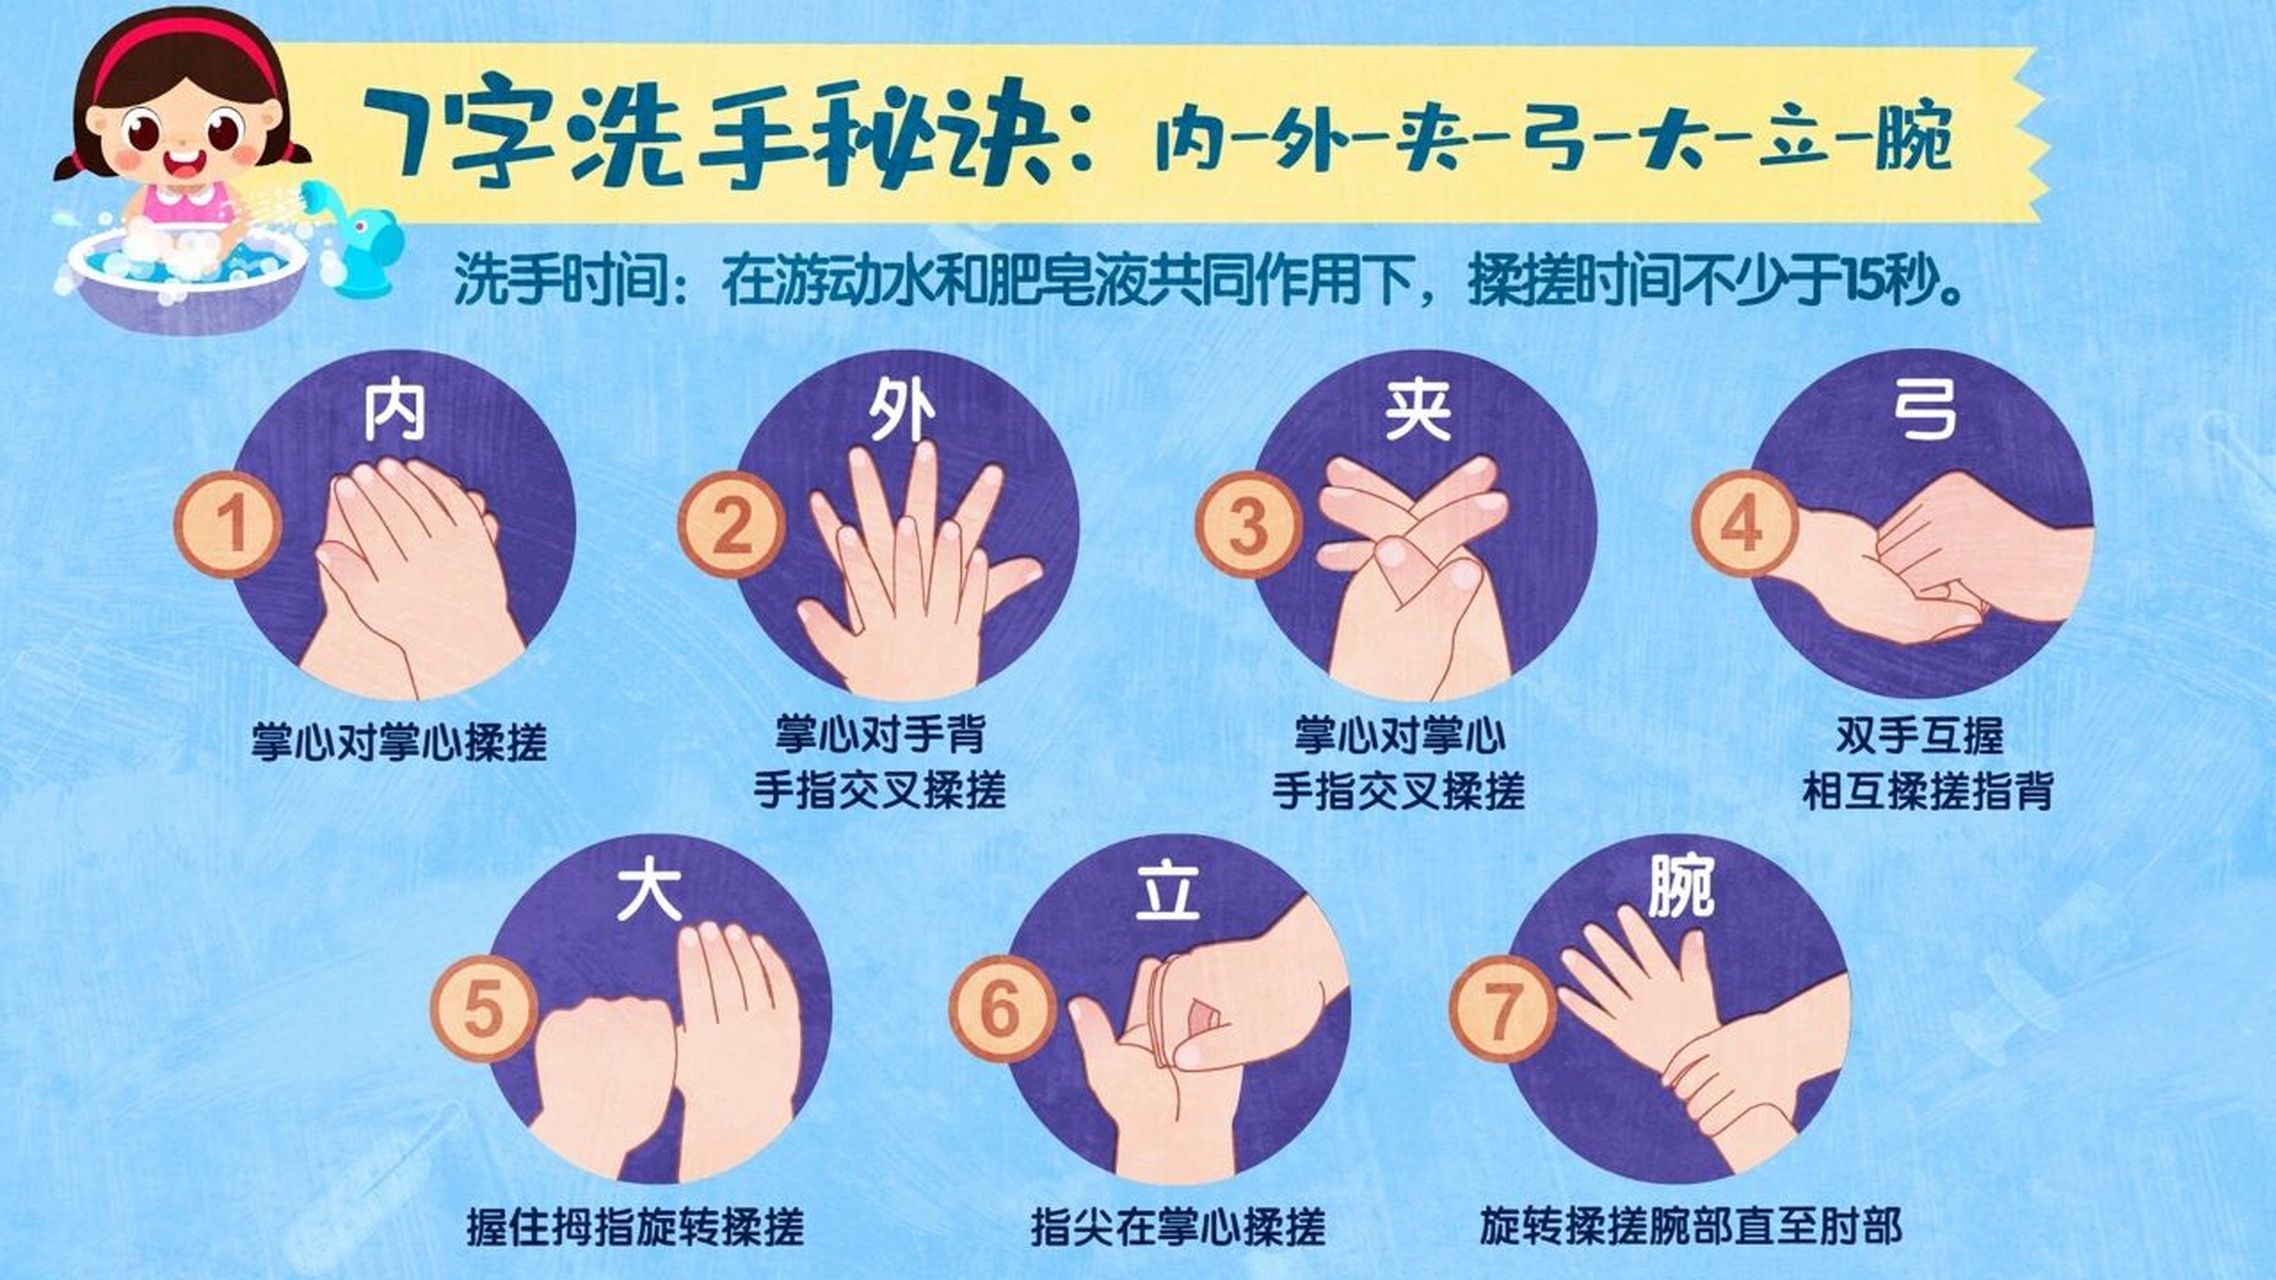 七步洗手分解步骤图片图片